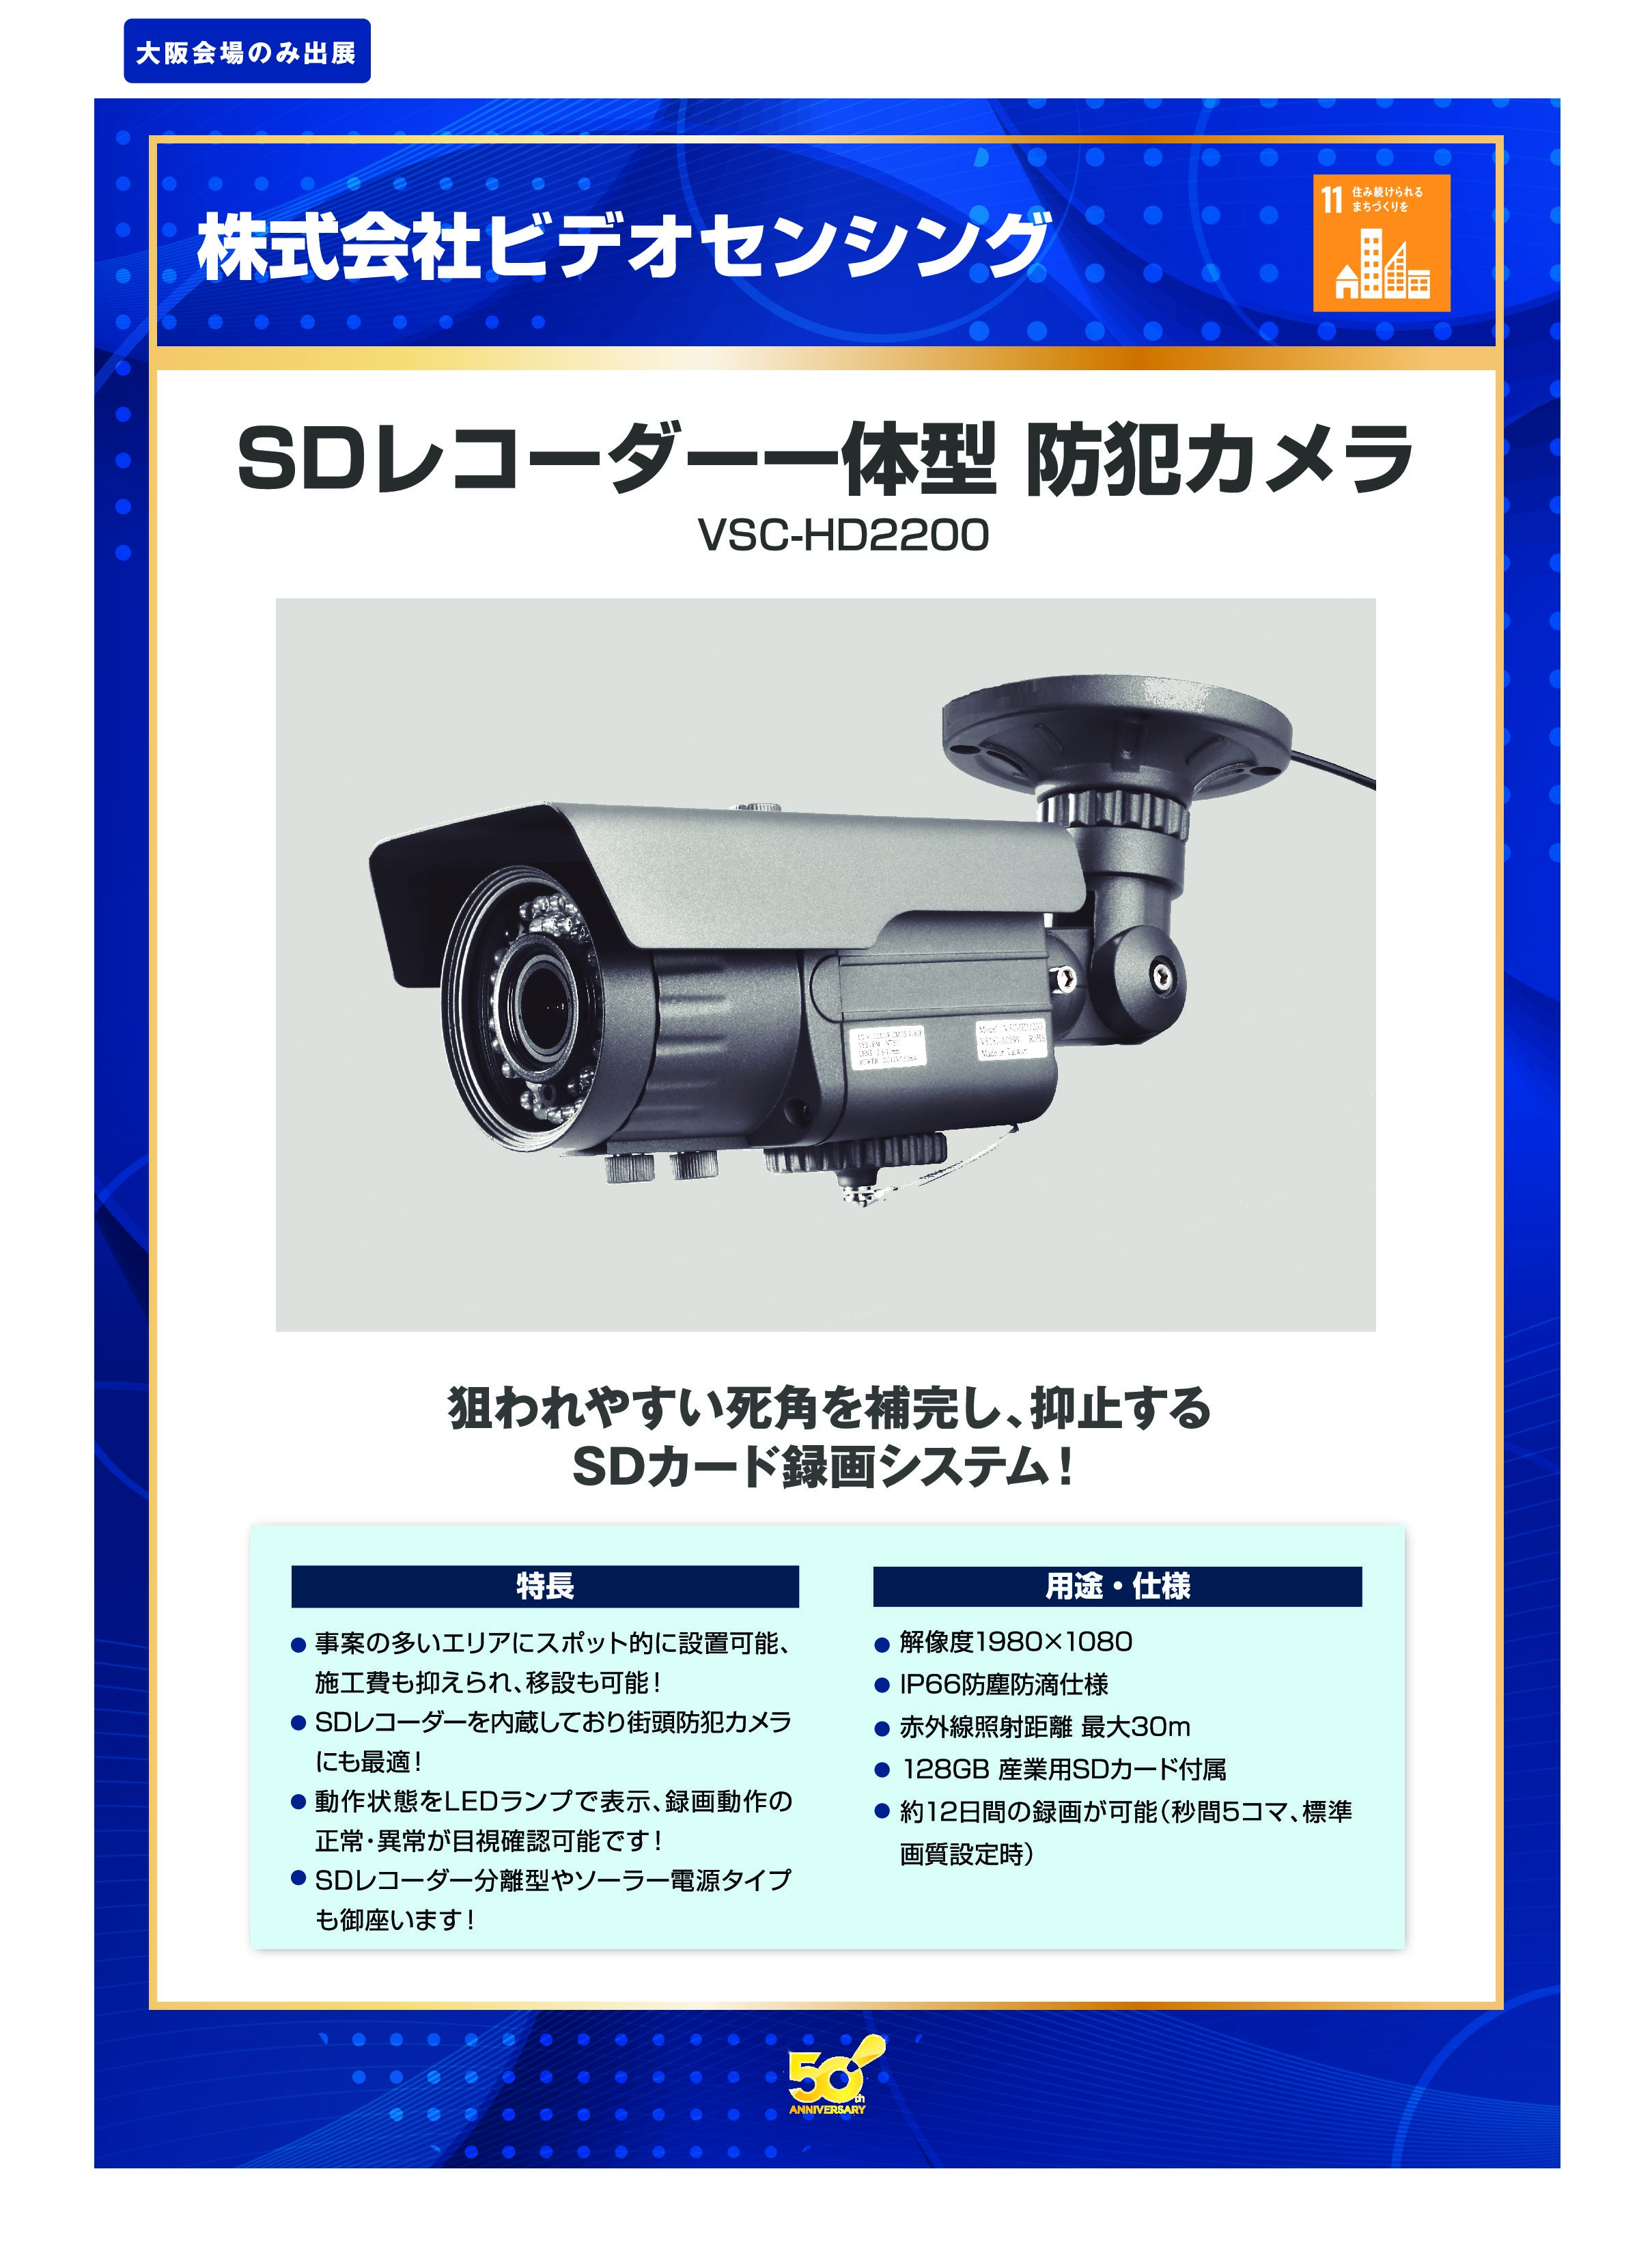 「SDレコーダー一体型 防犯カメラ」株式会社ビデオセンシングの画像